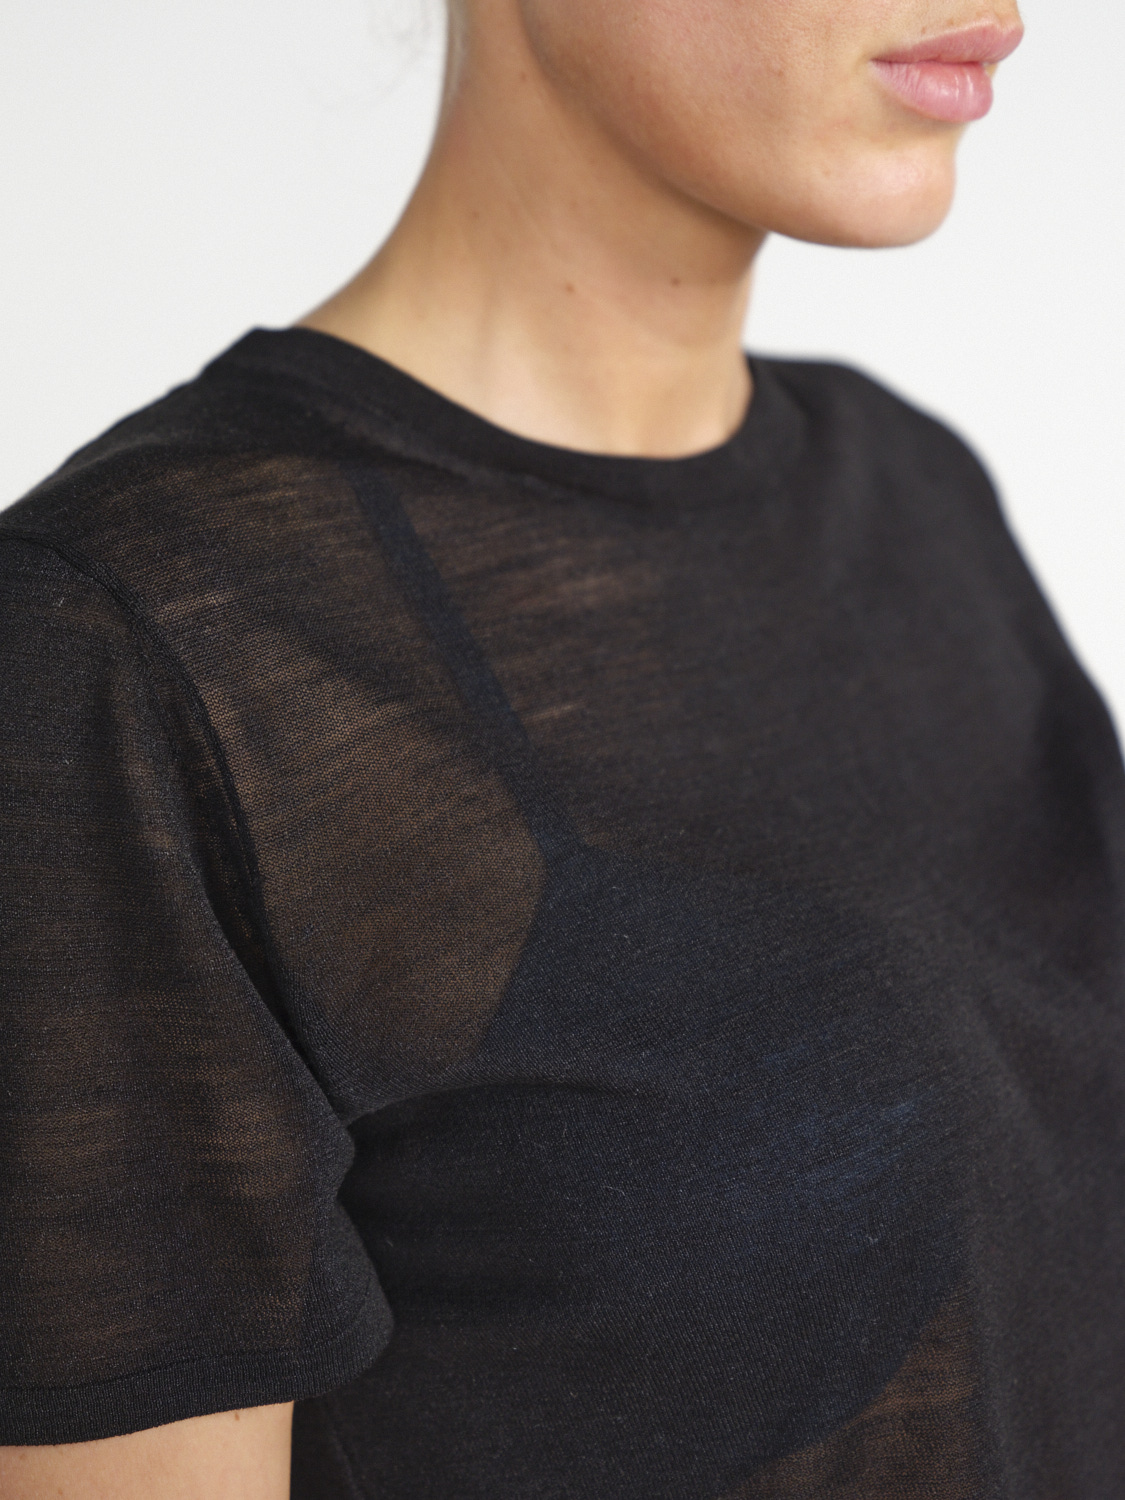 Nili Lotan Kimena – Leicht durchlässiges Seiden-Shirt   schwarz S